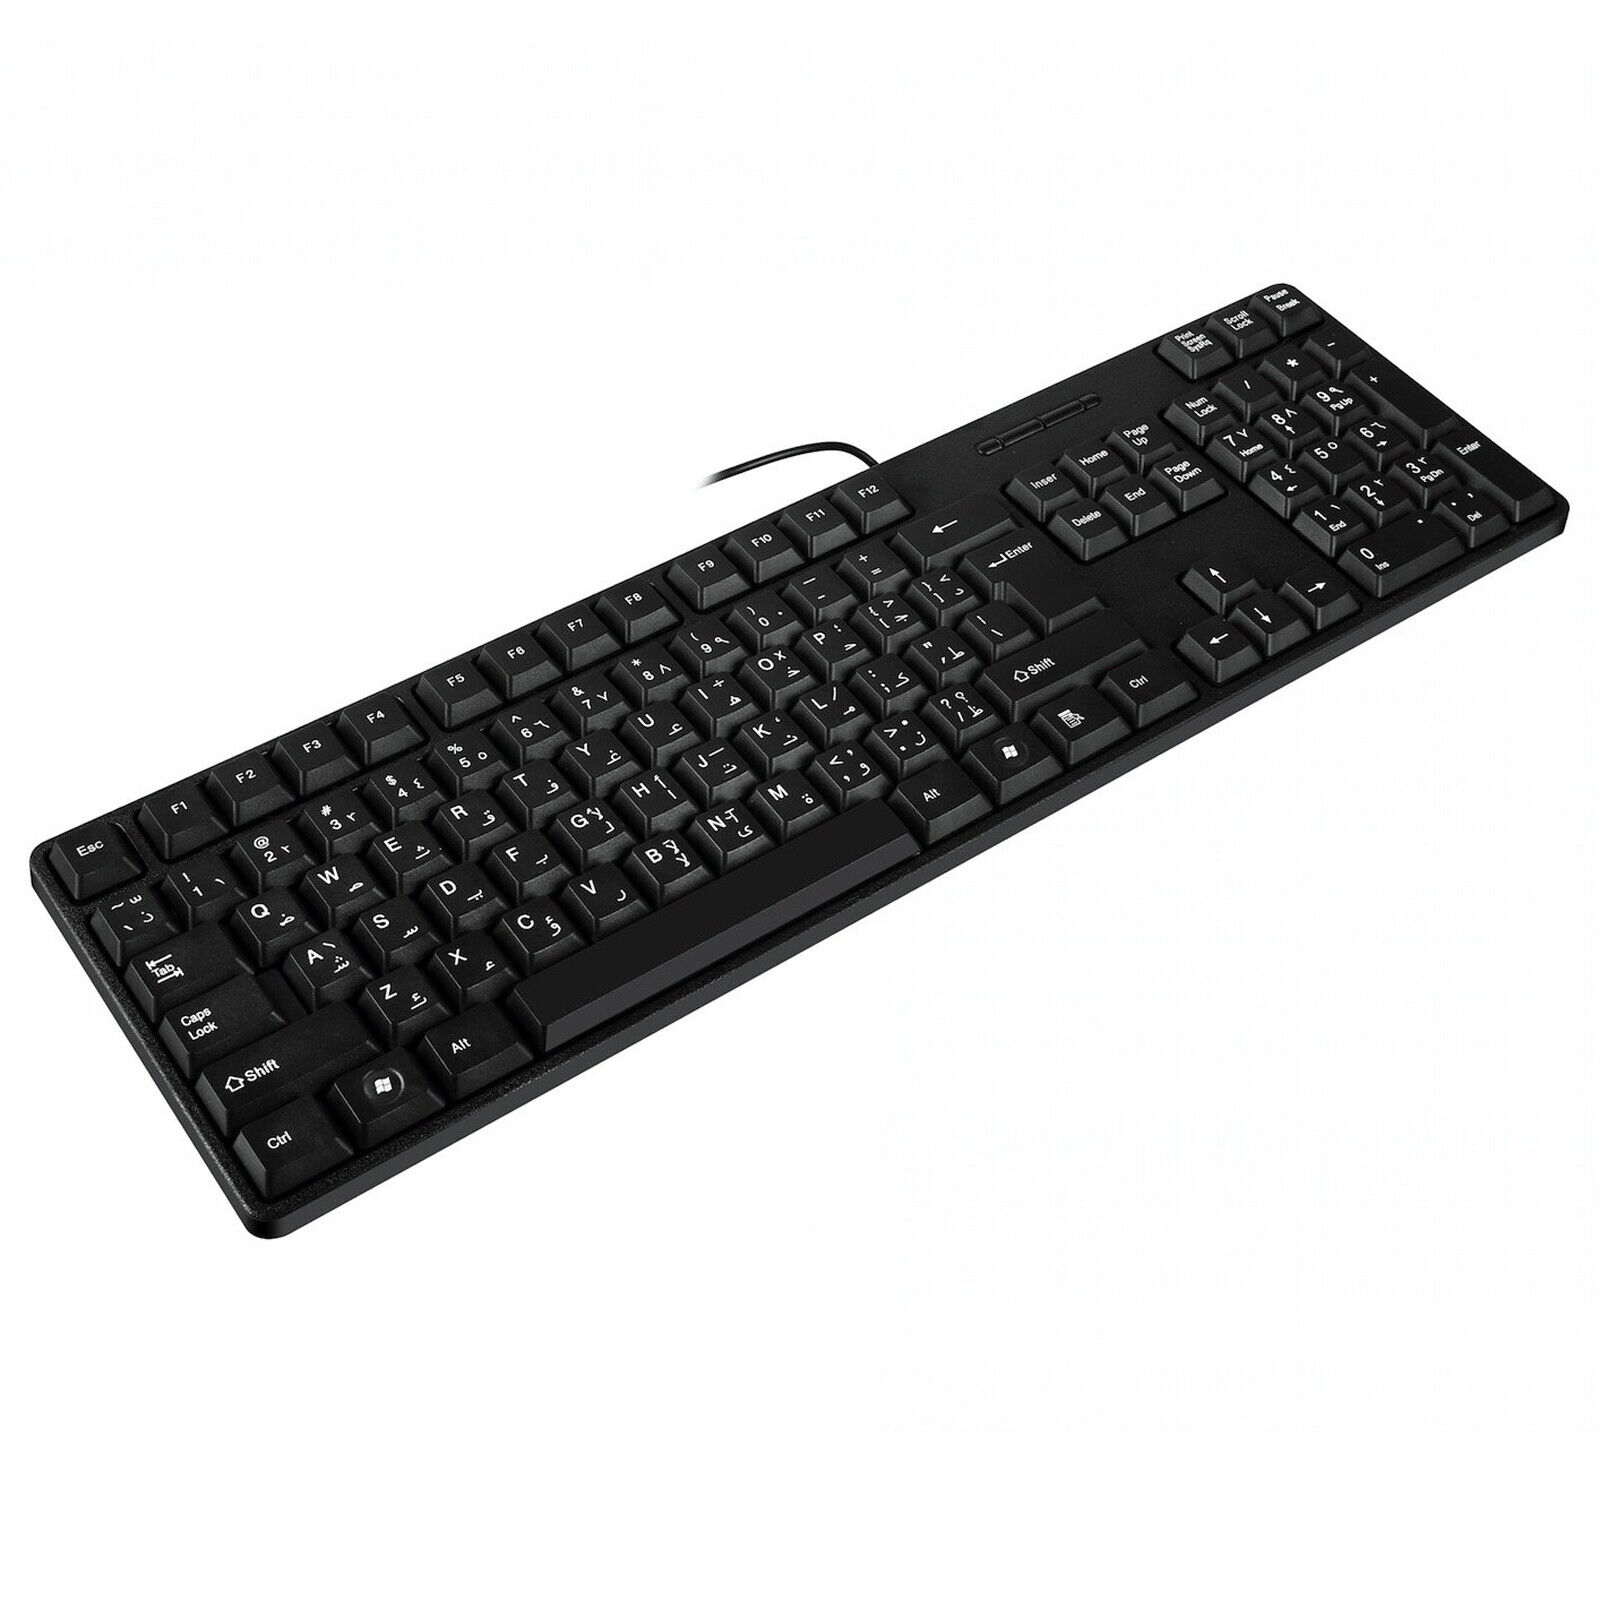 Arabic/English Language 104 Key Full Size USB Wired Keyboard with Numeric Keypad